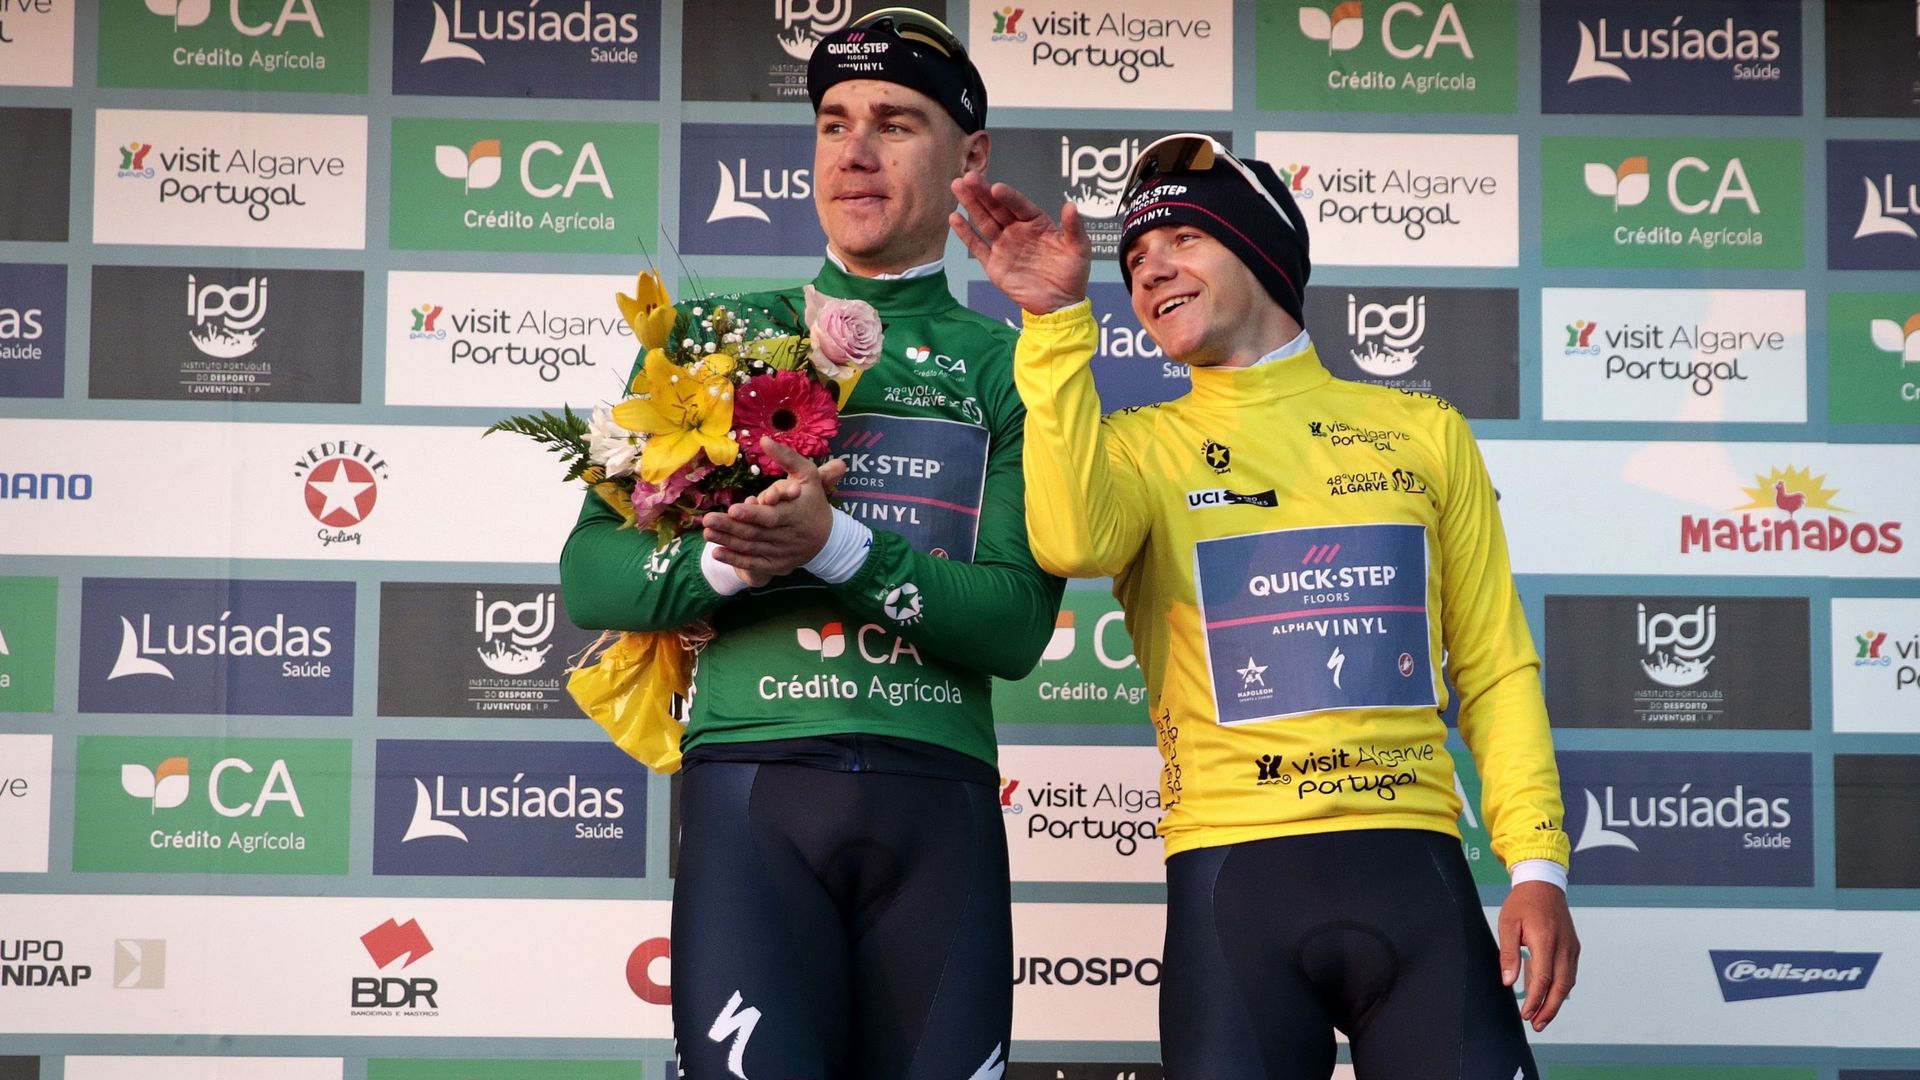 Remco Evenpoel vainqueur du CLM et du classement général sur le Tour d’Algarve 2022 était aux anges. Il est sur le podium aux côtés de son équipier, Fabio Jakobsen, vainqueur de deux étapes au sprint sur cette course à étapes.